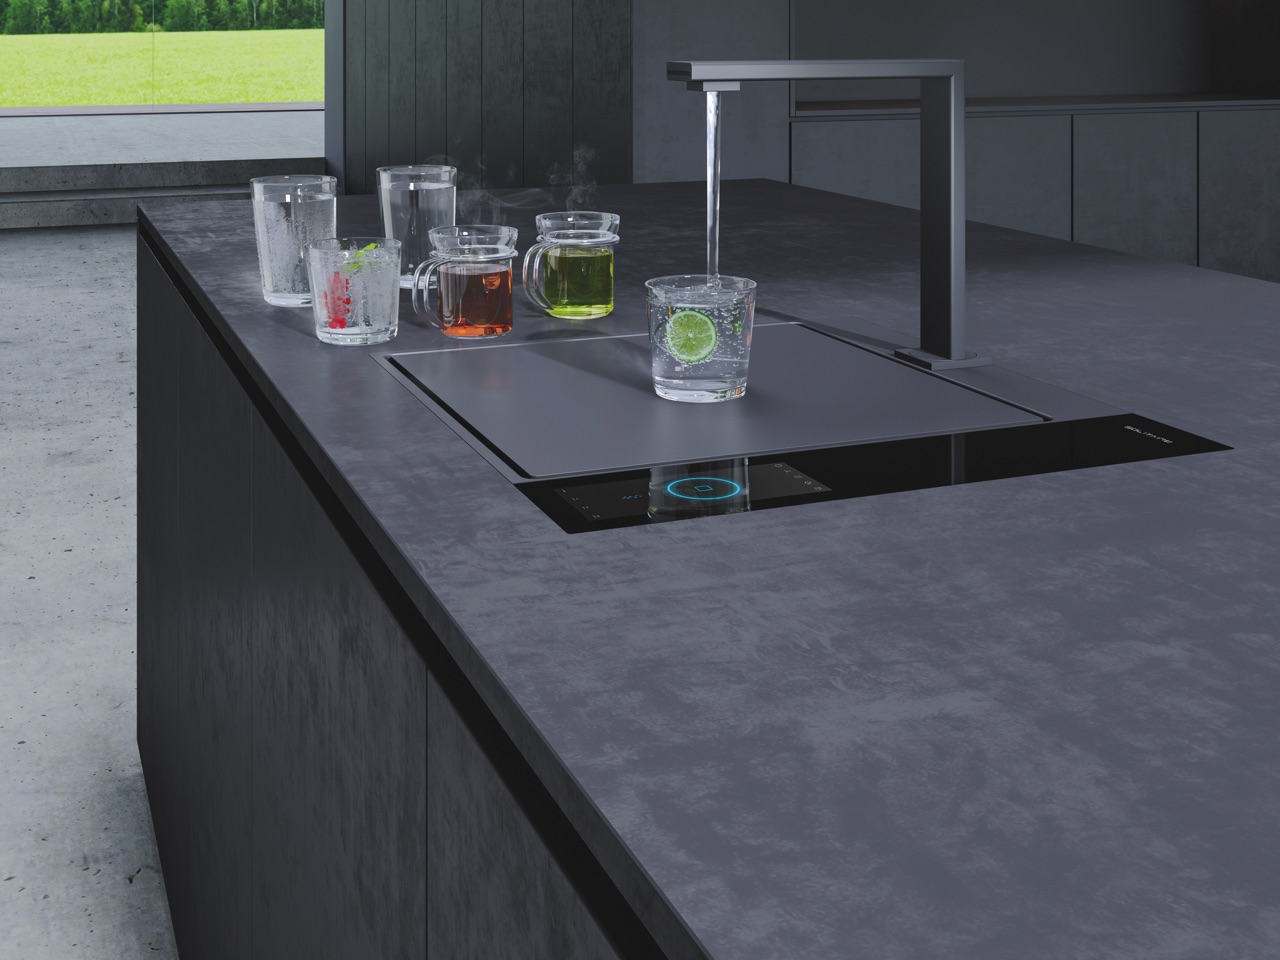 The Waterbase von Solitaire verändert das Küchendesign und ermöglicht neue Raumkonzepte. 